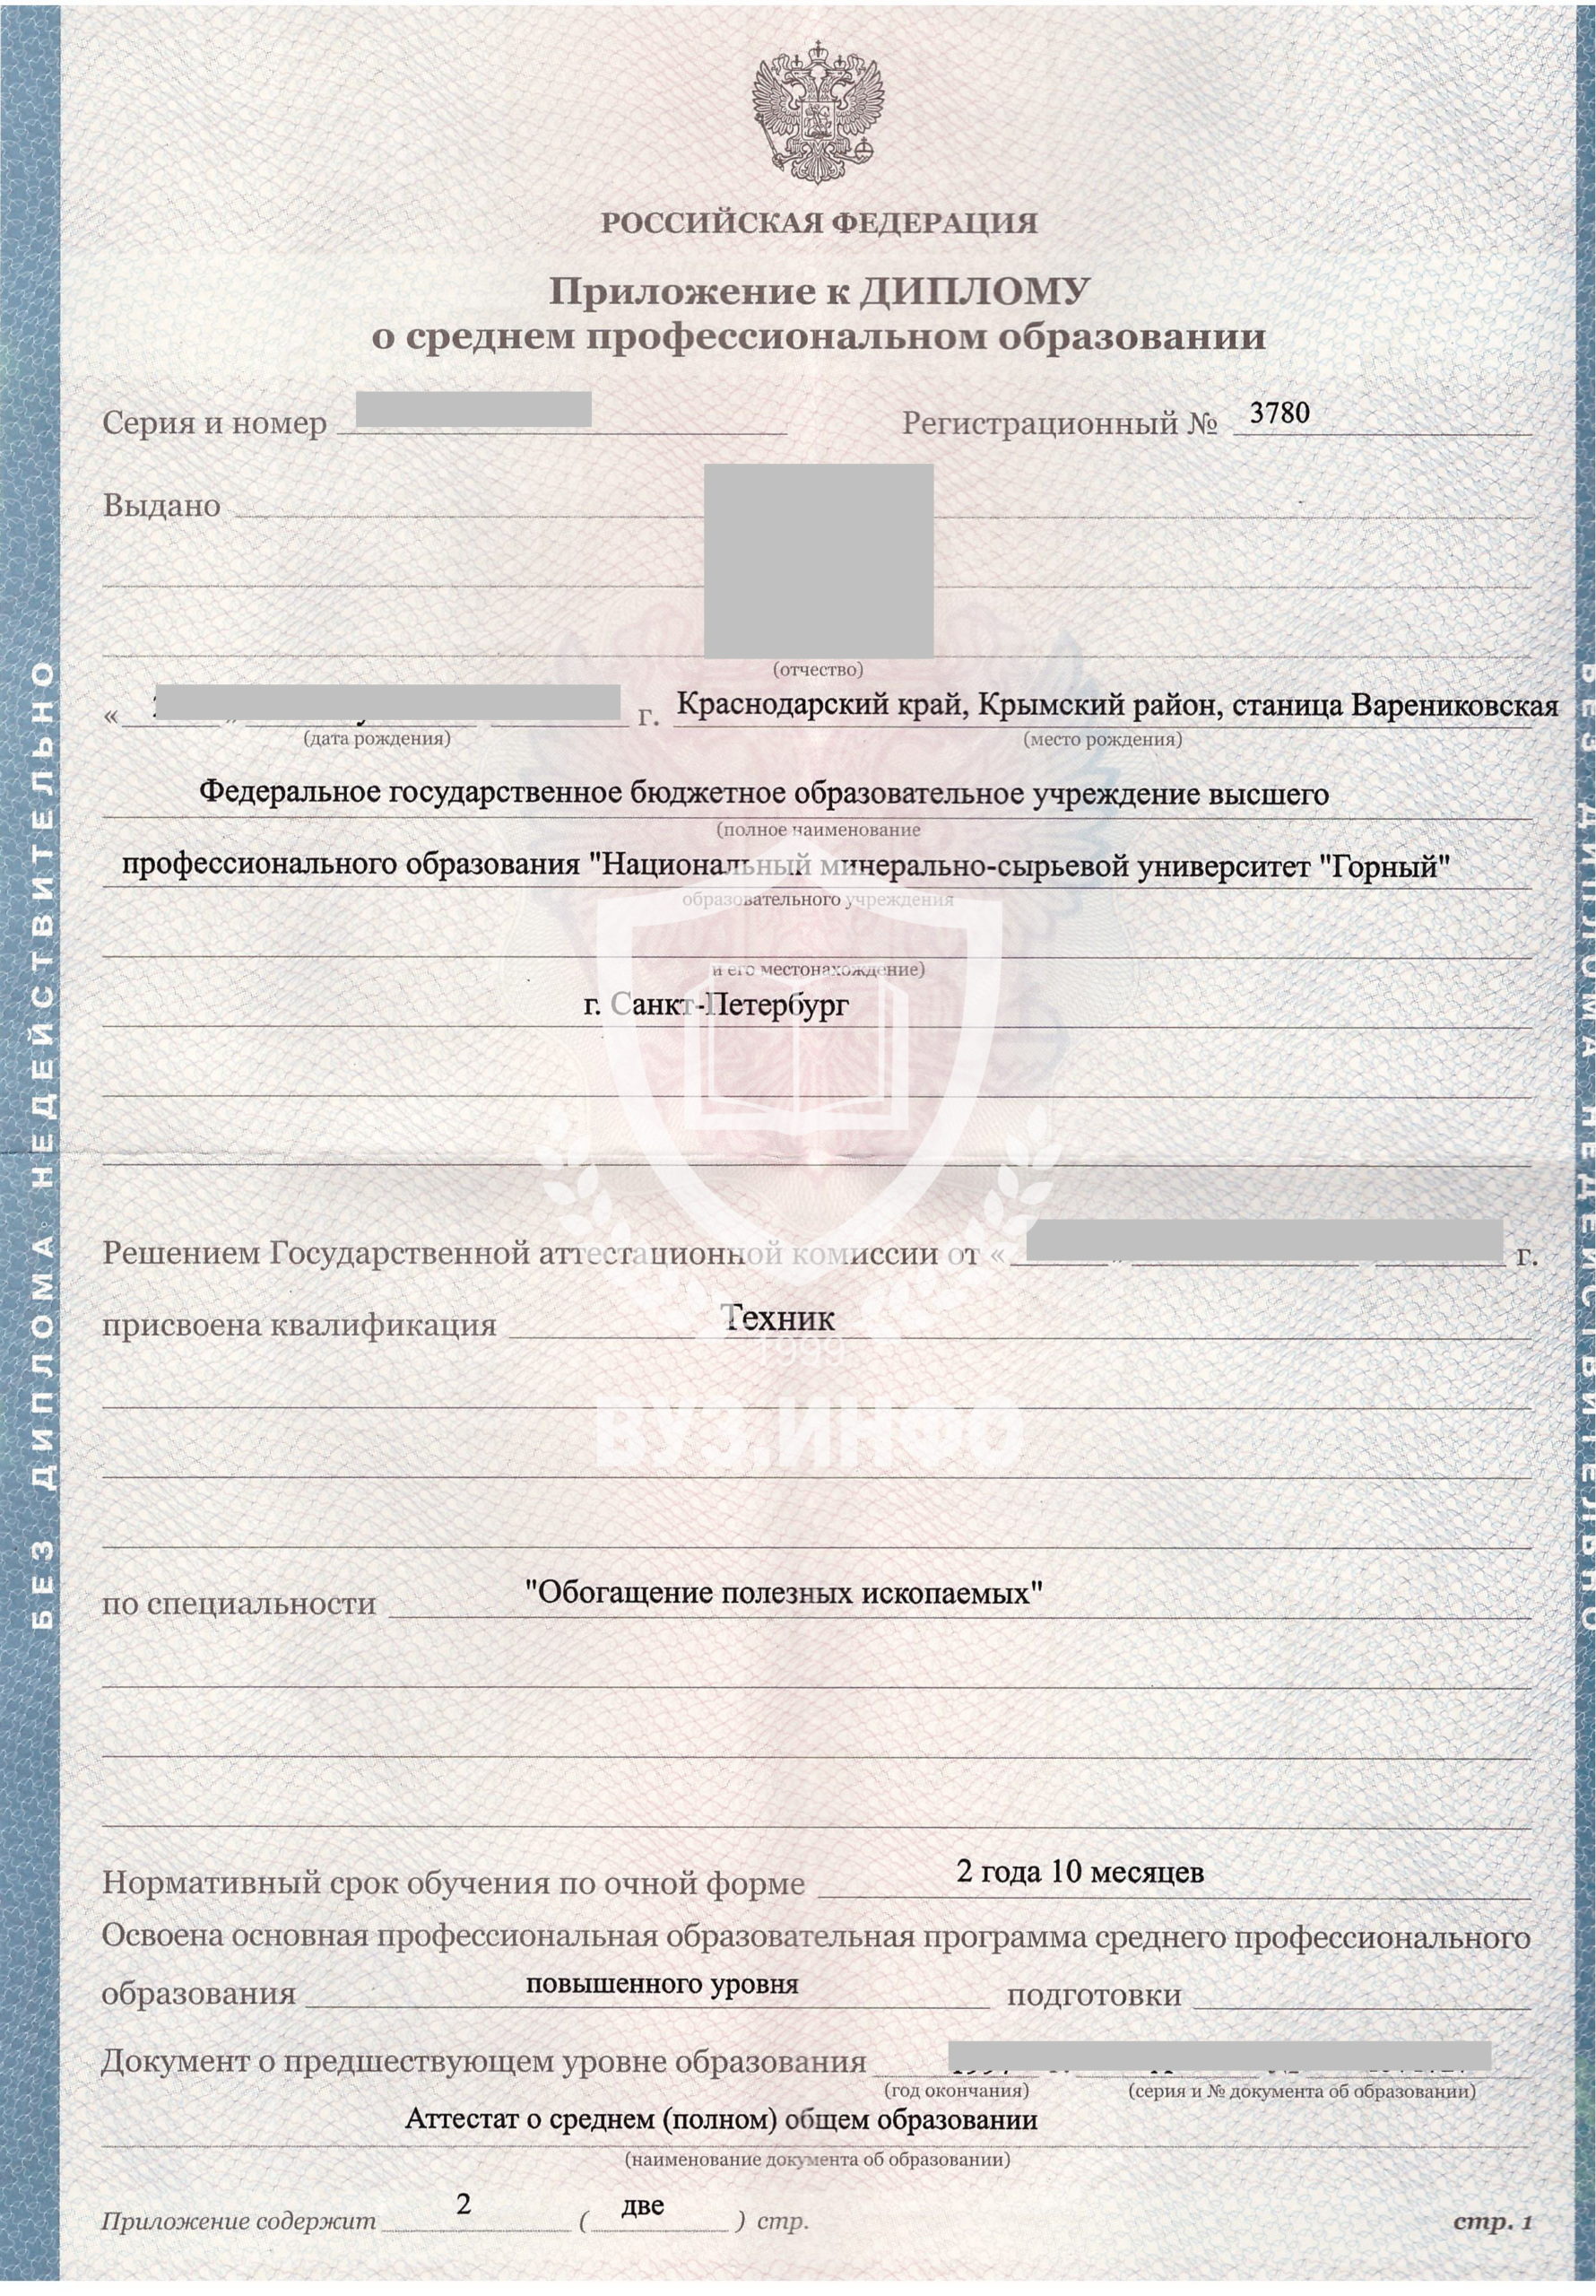 Приложение к диплому Хибинского горного колледжа Полезные ископаемые 2012 года (бланк Гознак Пермь)